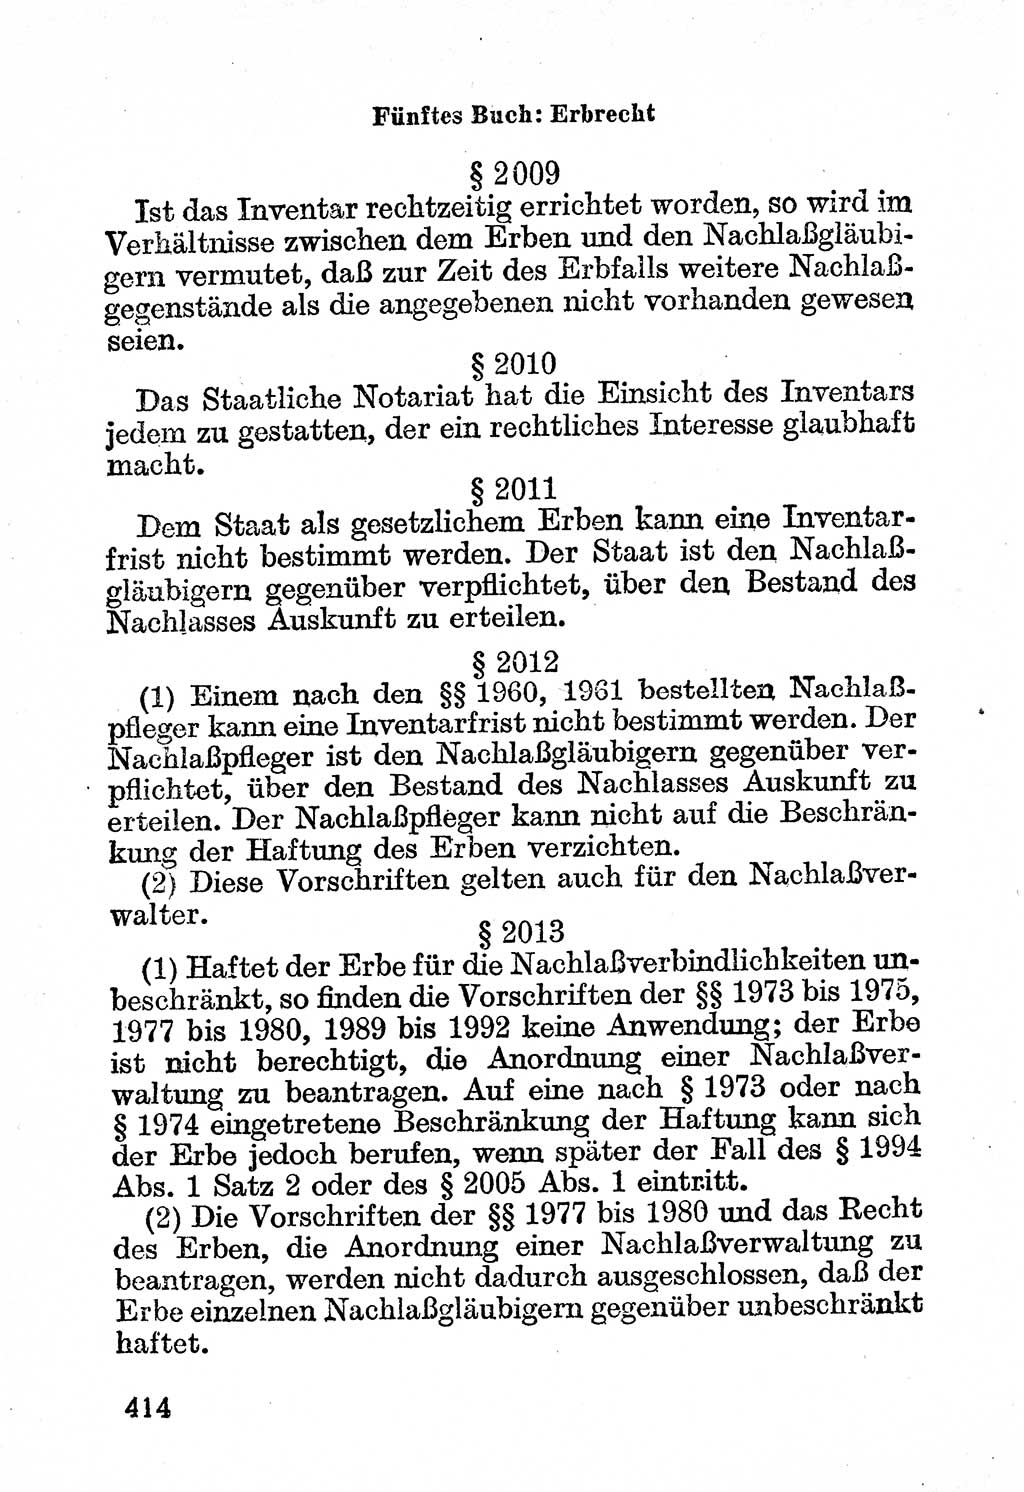 Bürgerliches Gesetzbuch (BGB) nebst wichtigen Nebengesetzen [Deutsche Demokratische Republik (DDR)] 1956, Seite 414 (BGB Nebenges. DDR 1956, S. 414)